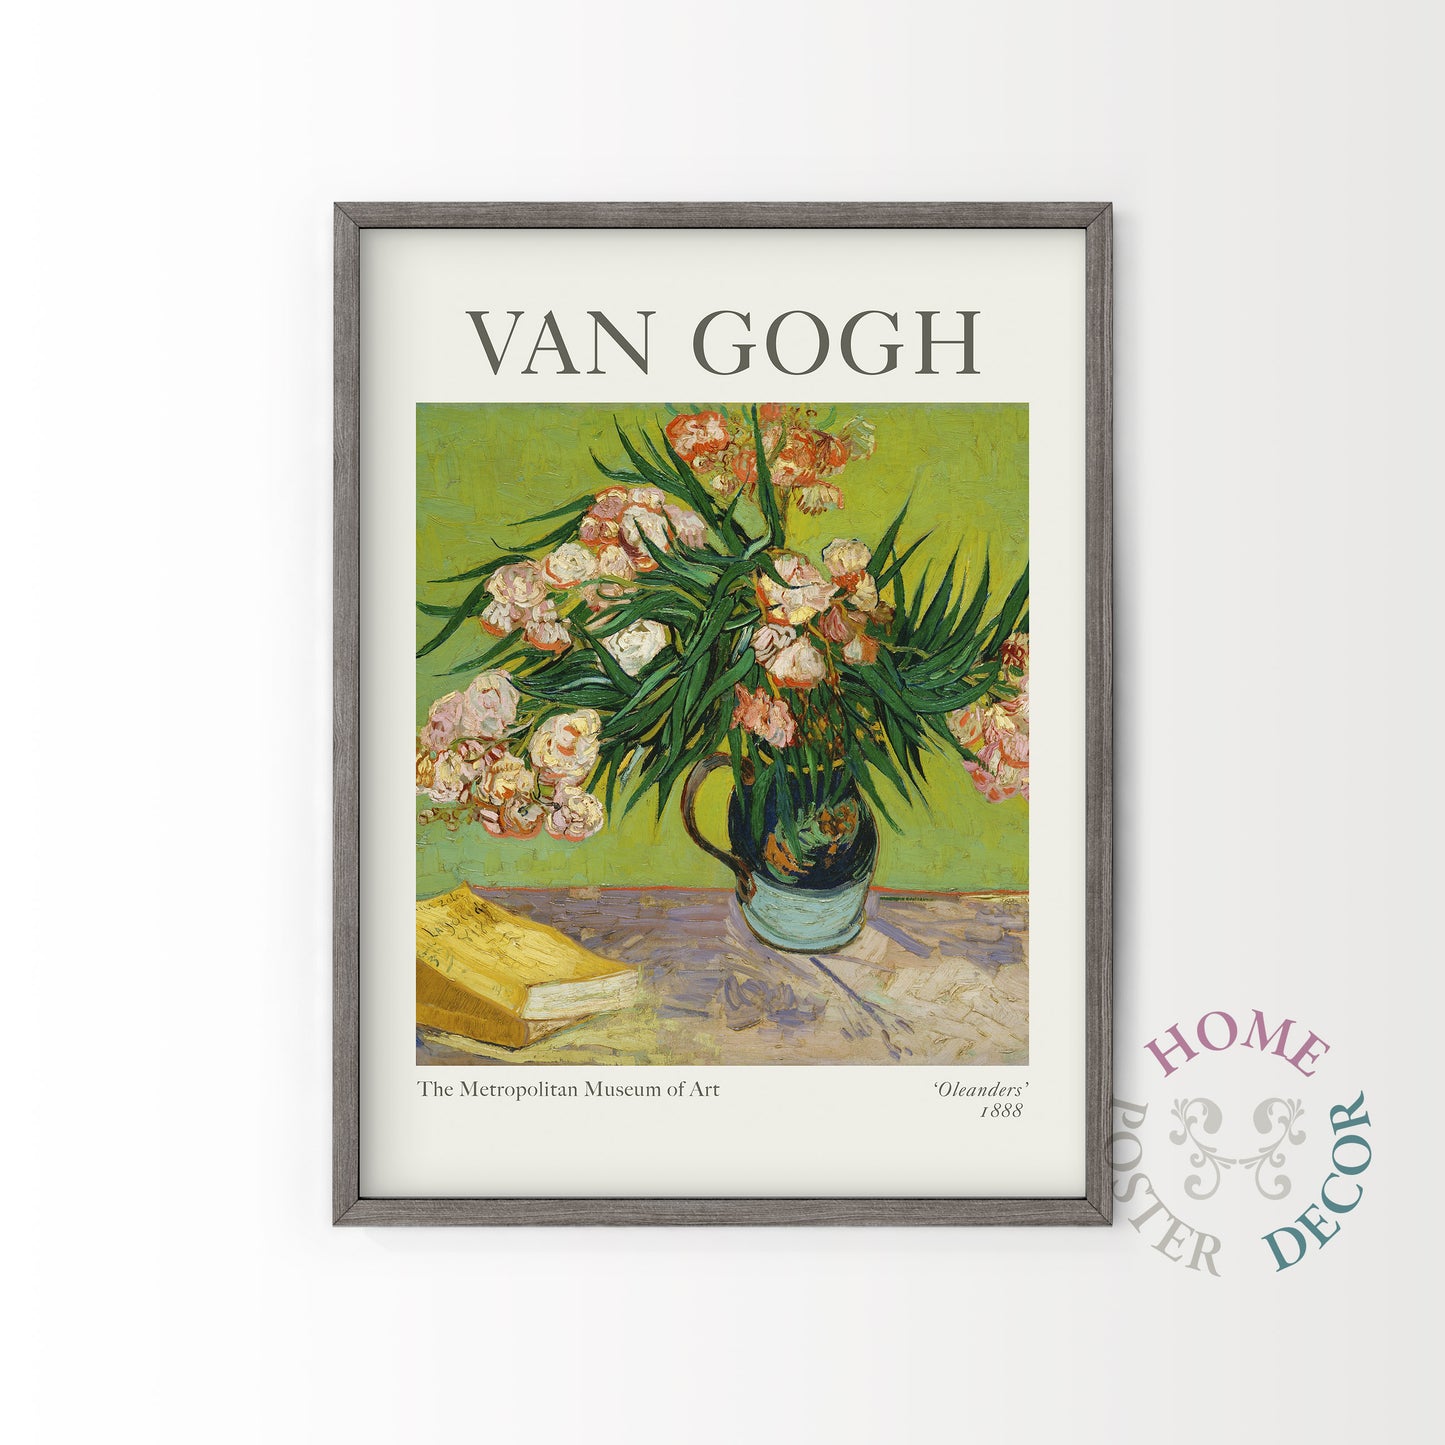 Van Gogh Poster, Oleanders Painting